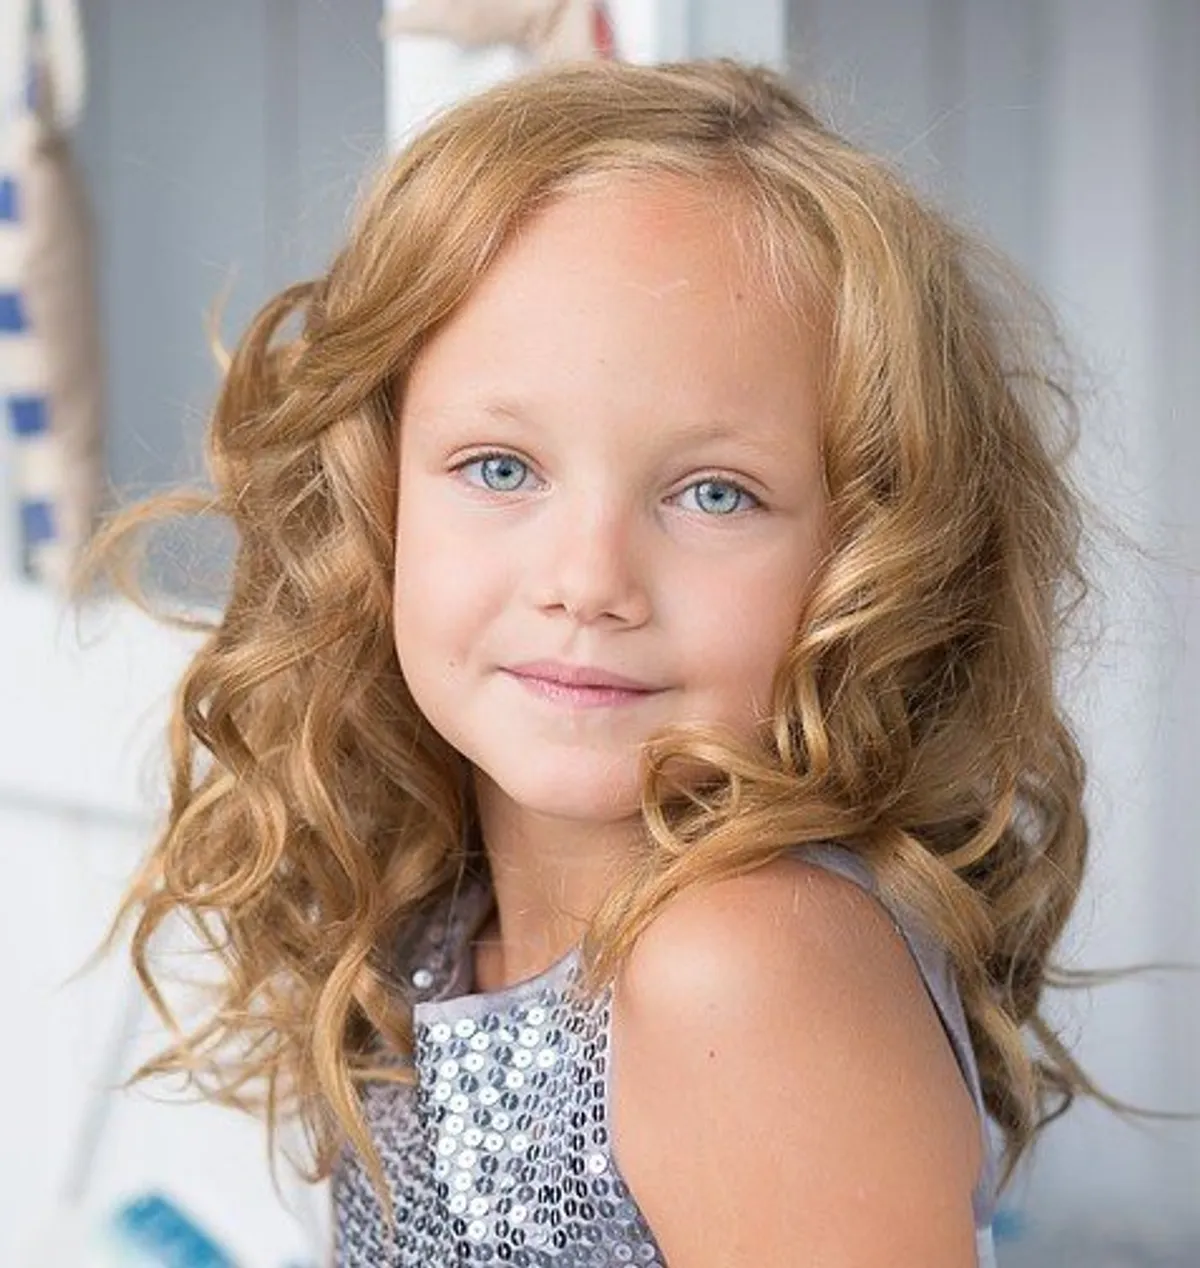 Une belle petite fille avec une magnifique coiffure. | Photo : Pixabay